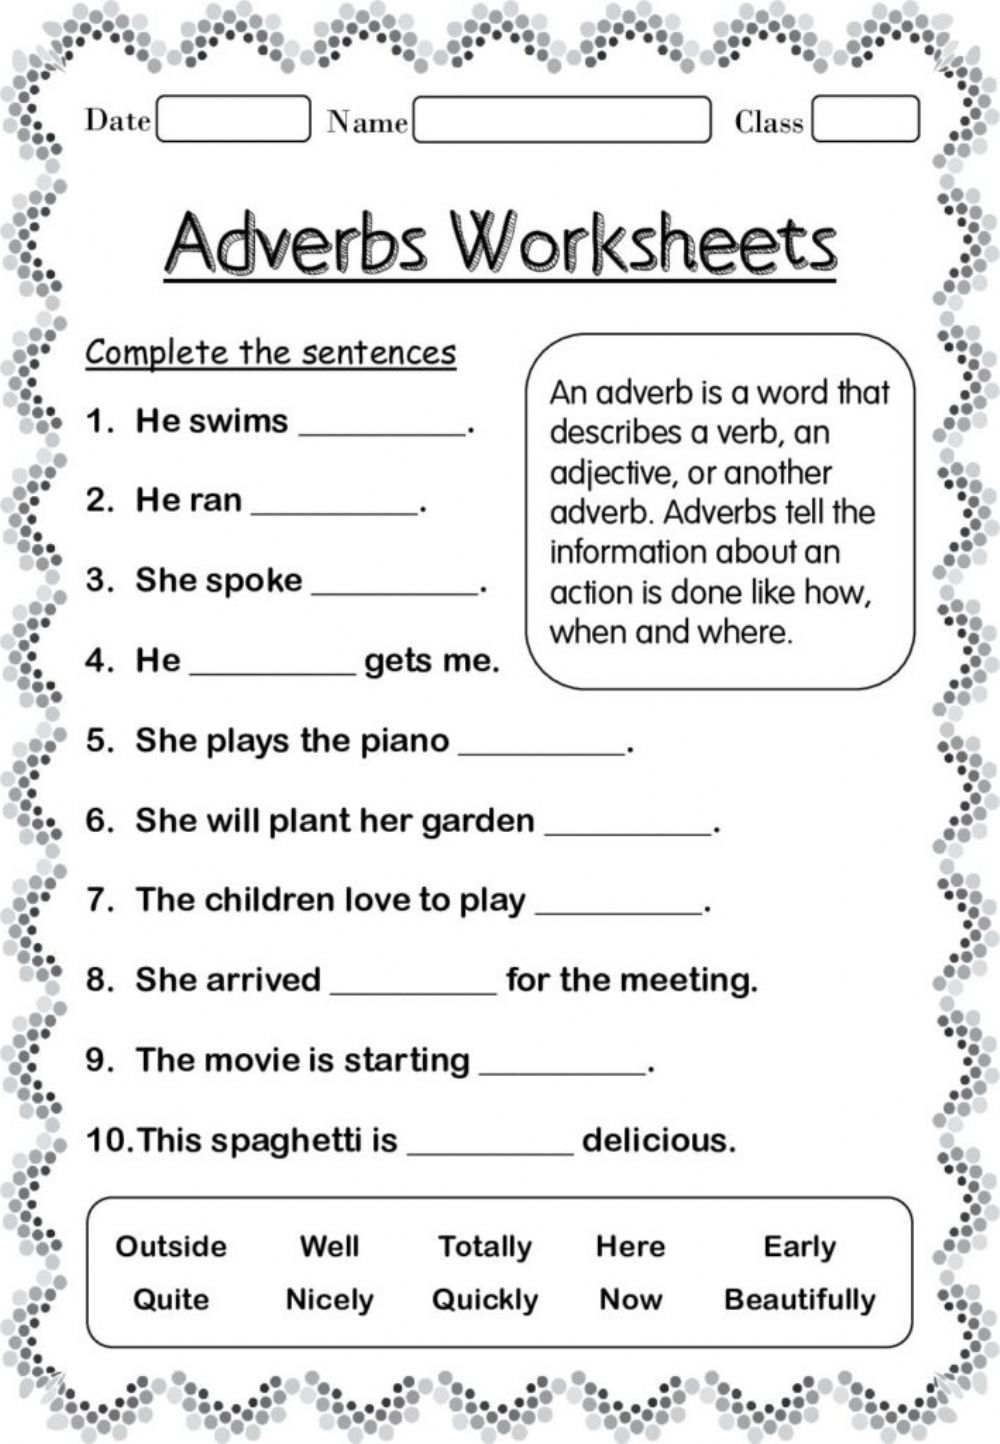 kinds-of-adverbs-worksheet-for-grade-2-adverbworksheets